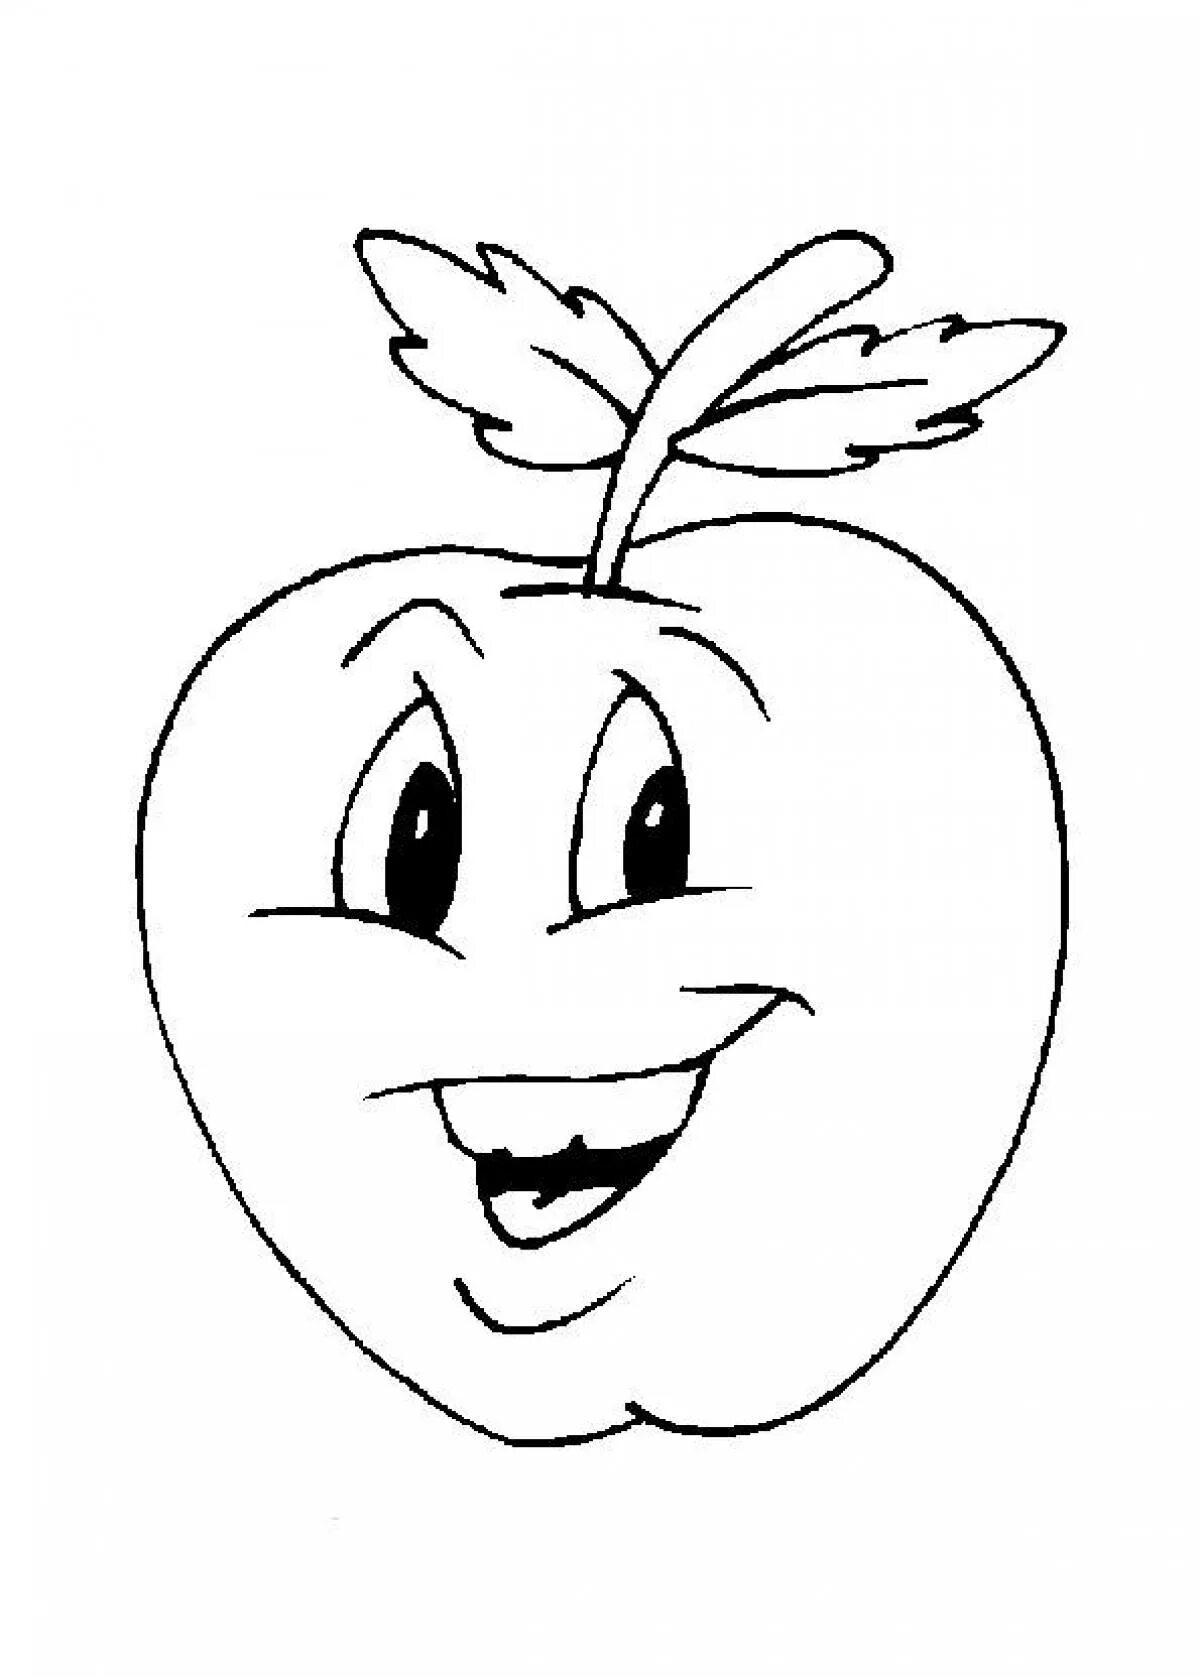 Раскраска 3 яблока. Яблоко раскраска. Раскраска для детеяблоко. Яблоко картинка для детей раскраска. Яблоко раскраска для малышей.